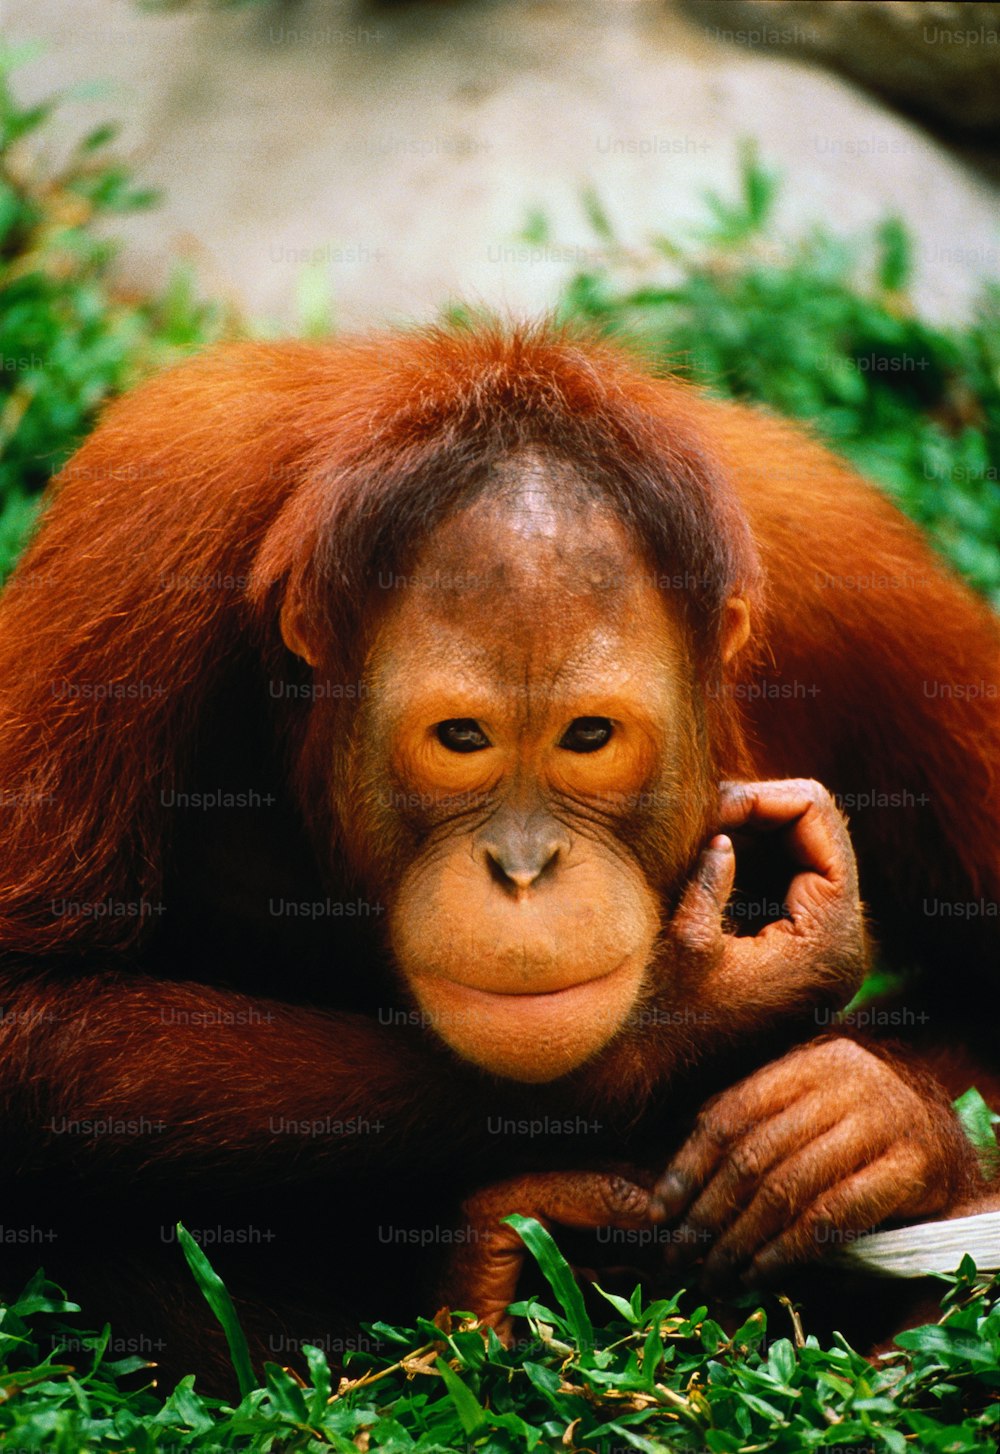 Prigioniero, posizione sconosciuta. Orang-utan è un nome malese che significa "uomo della foresta". Gli oranghi trascorrono la maggior parte della loro vita sugli alberi; Viaggiare in piccoli gruppi di giorno, mangiare foglie e frutta e nidificare di notte. Originario delle foreste del Borneo e di Sumatra.